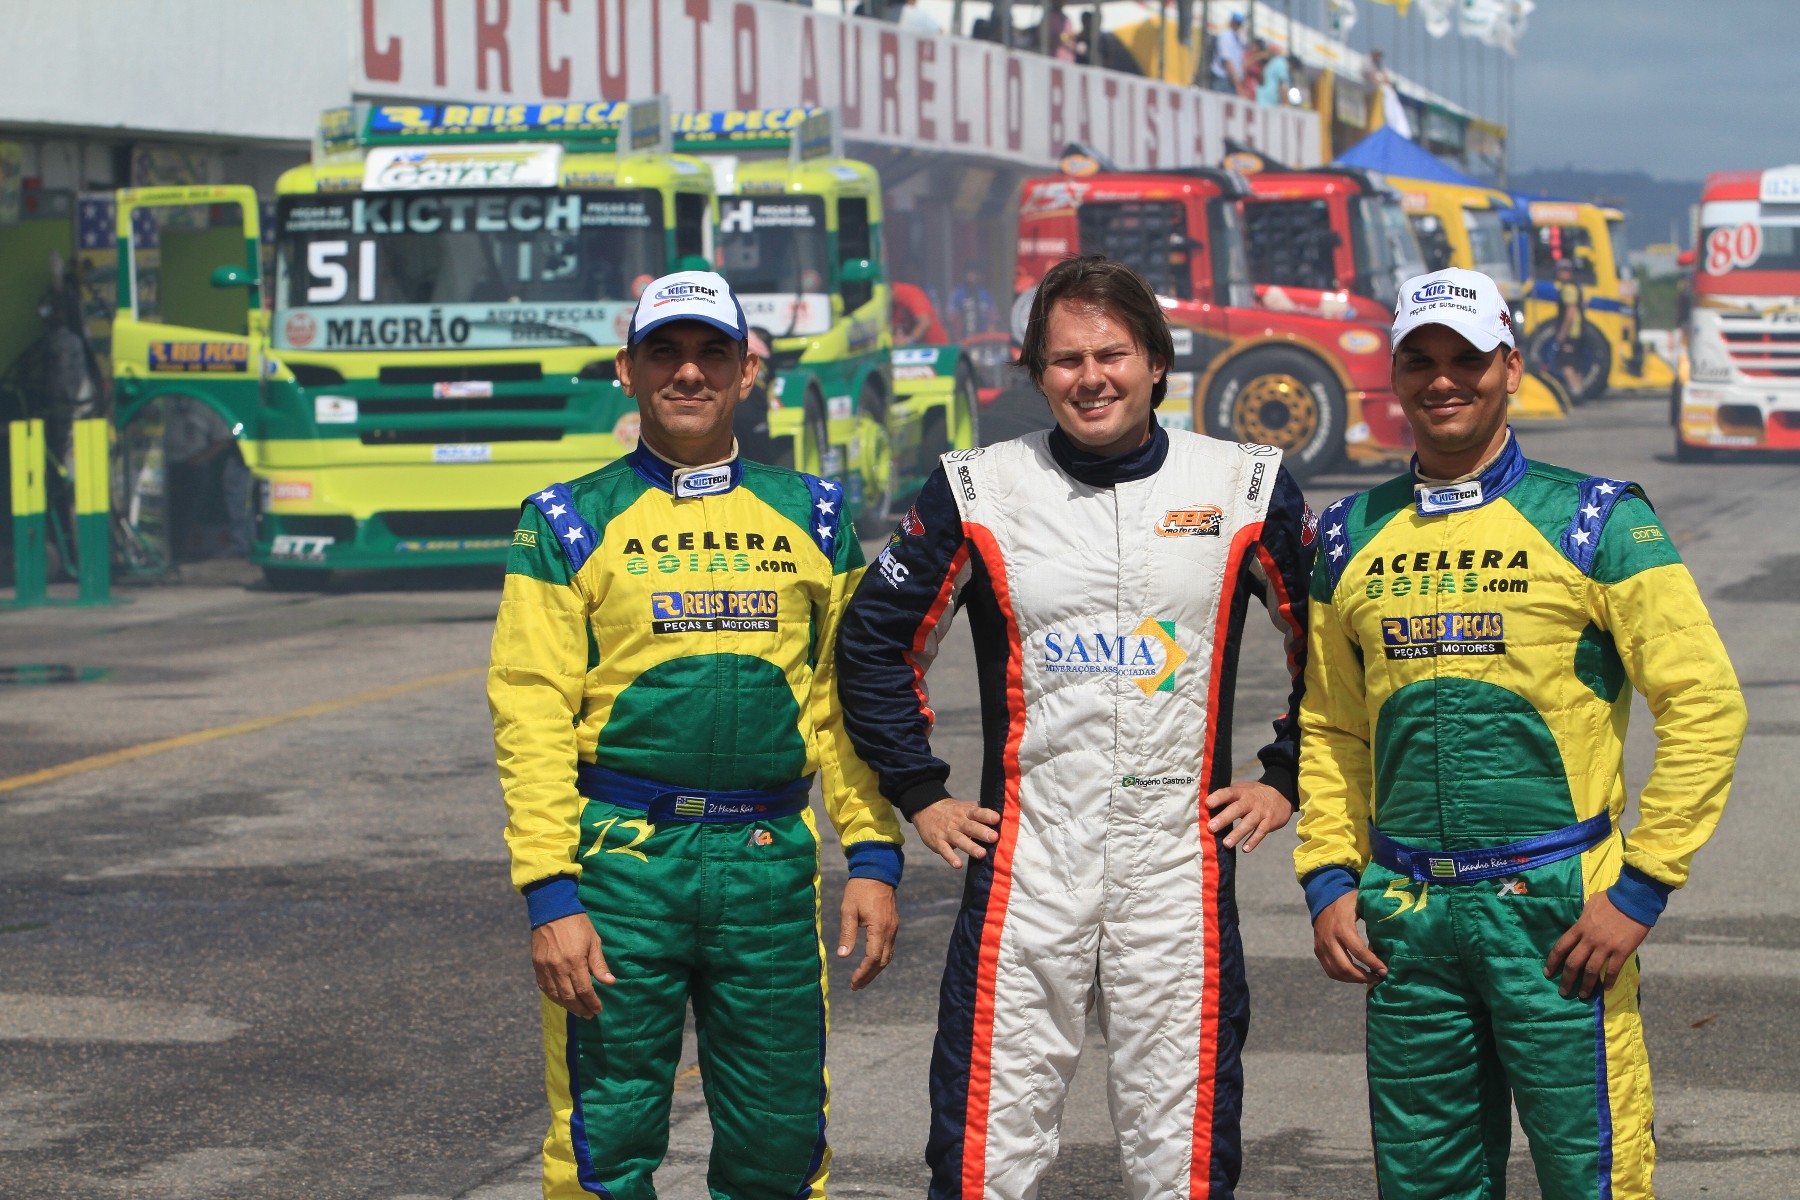 GP Crystal dividirá torcida de Goiânia entre três pilotos na Fórmula Truck